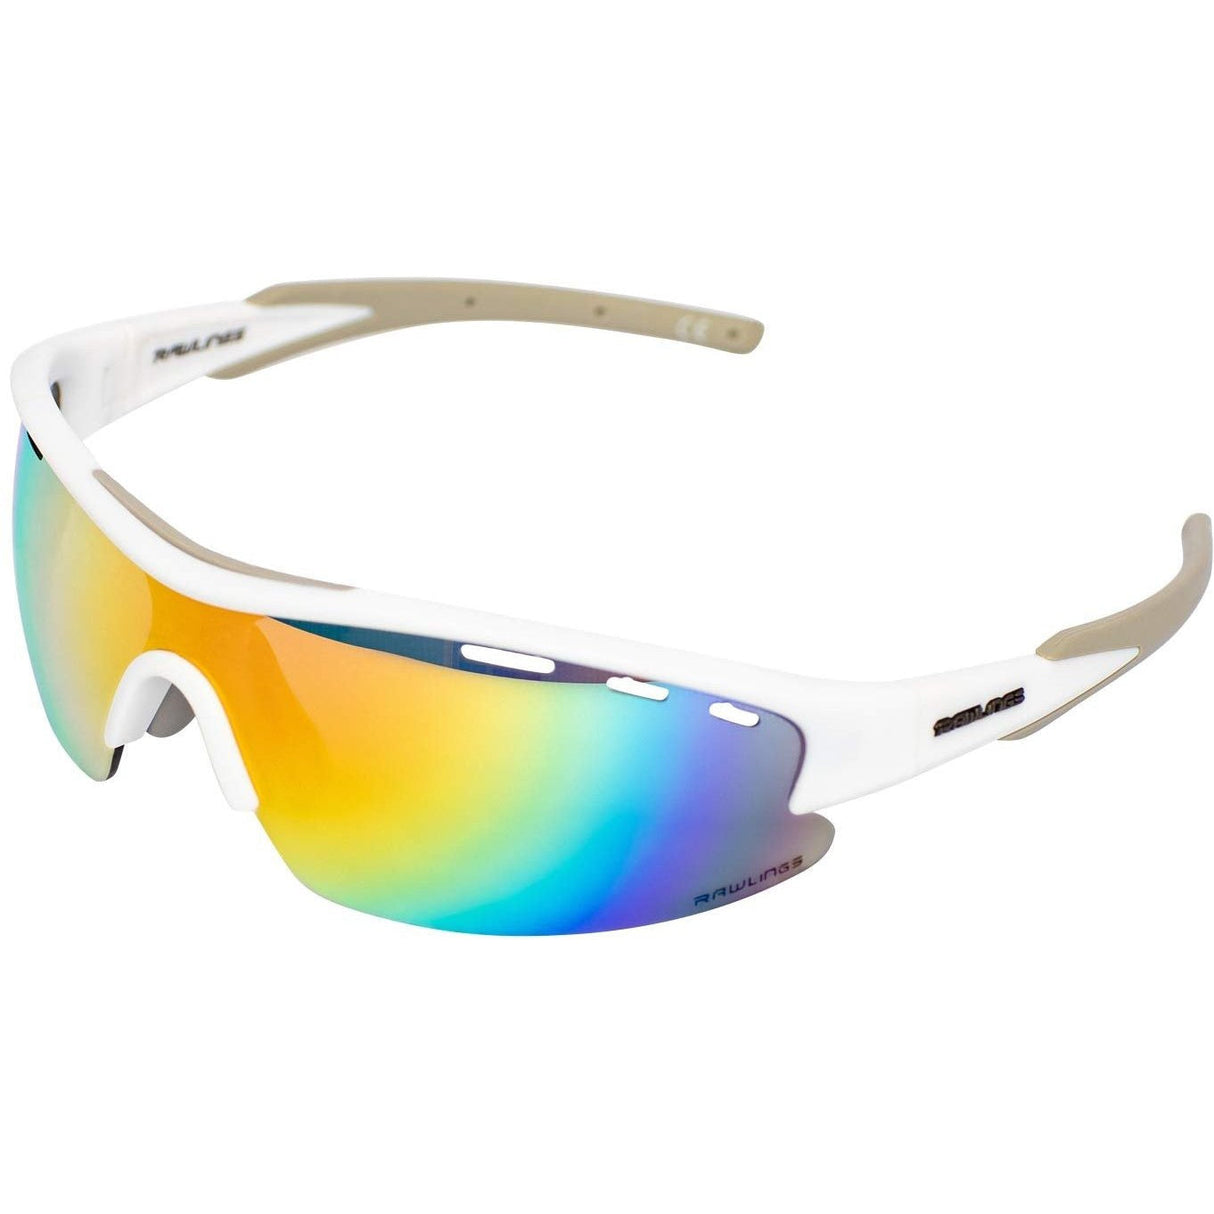 Rawlings Adult Shield Baseball Sunglasses Lightweight Sports Sun